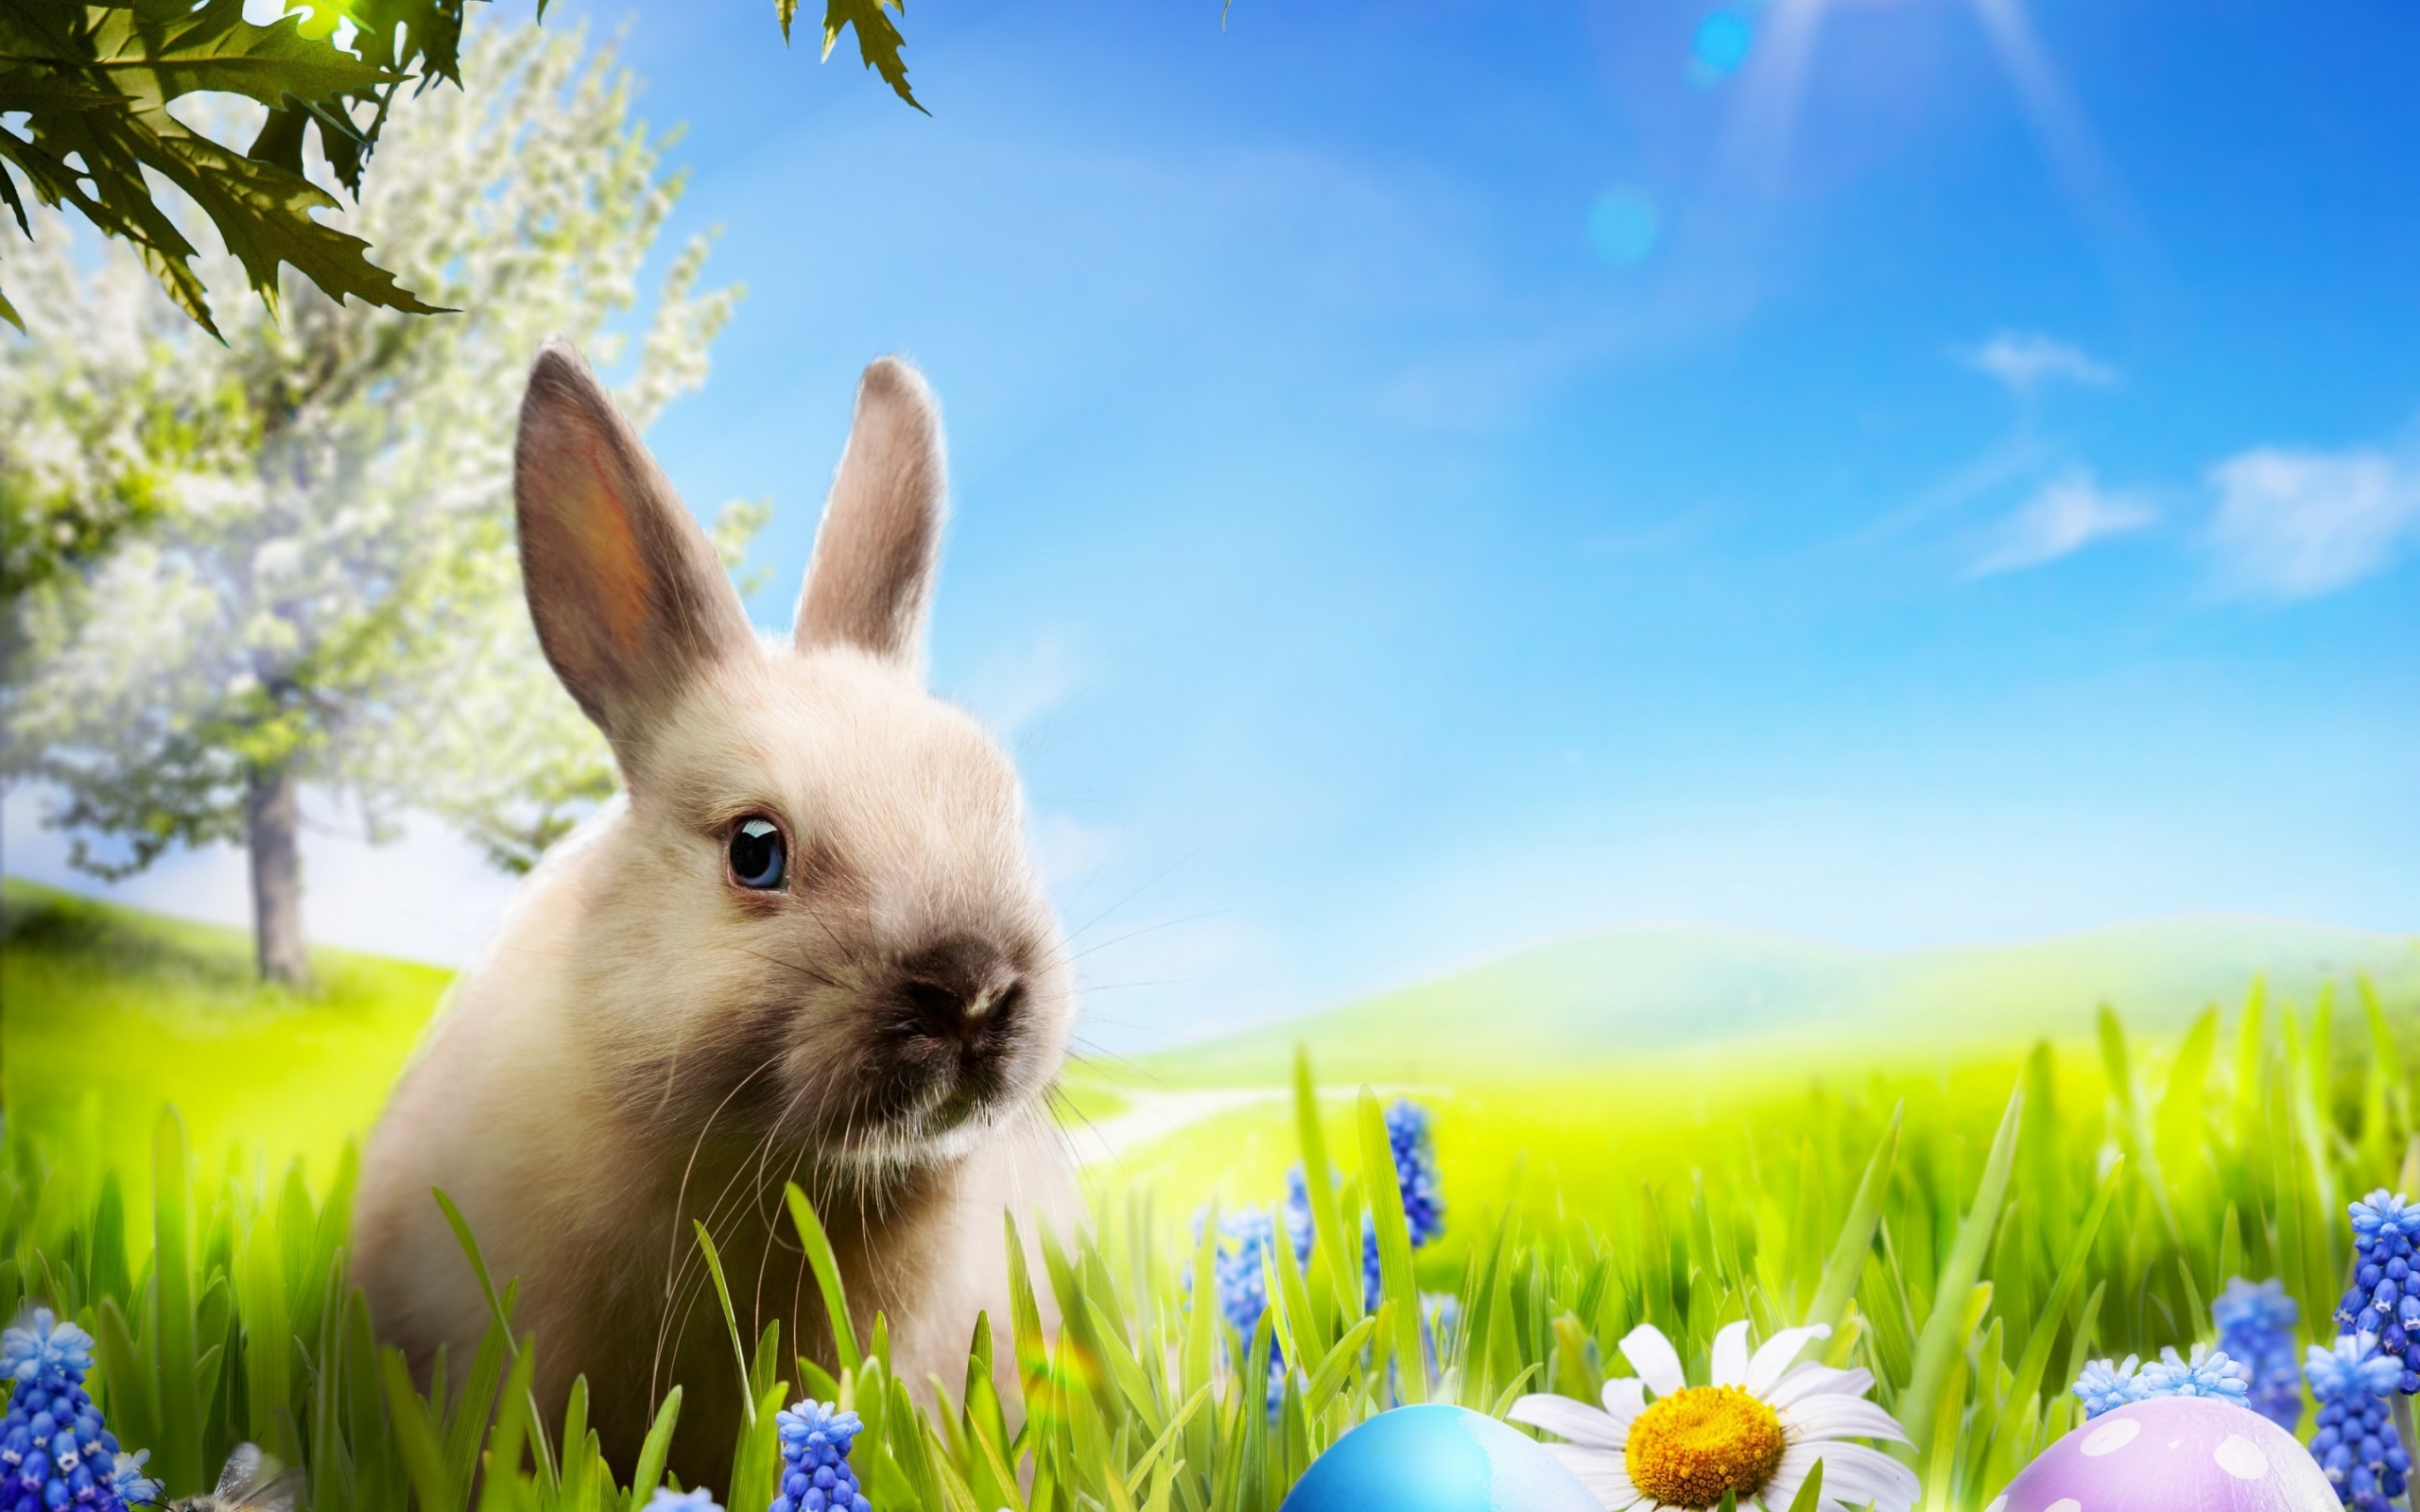 Little Rabbit for 2560 x 1600 widescreen resolution